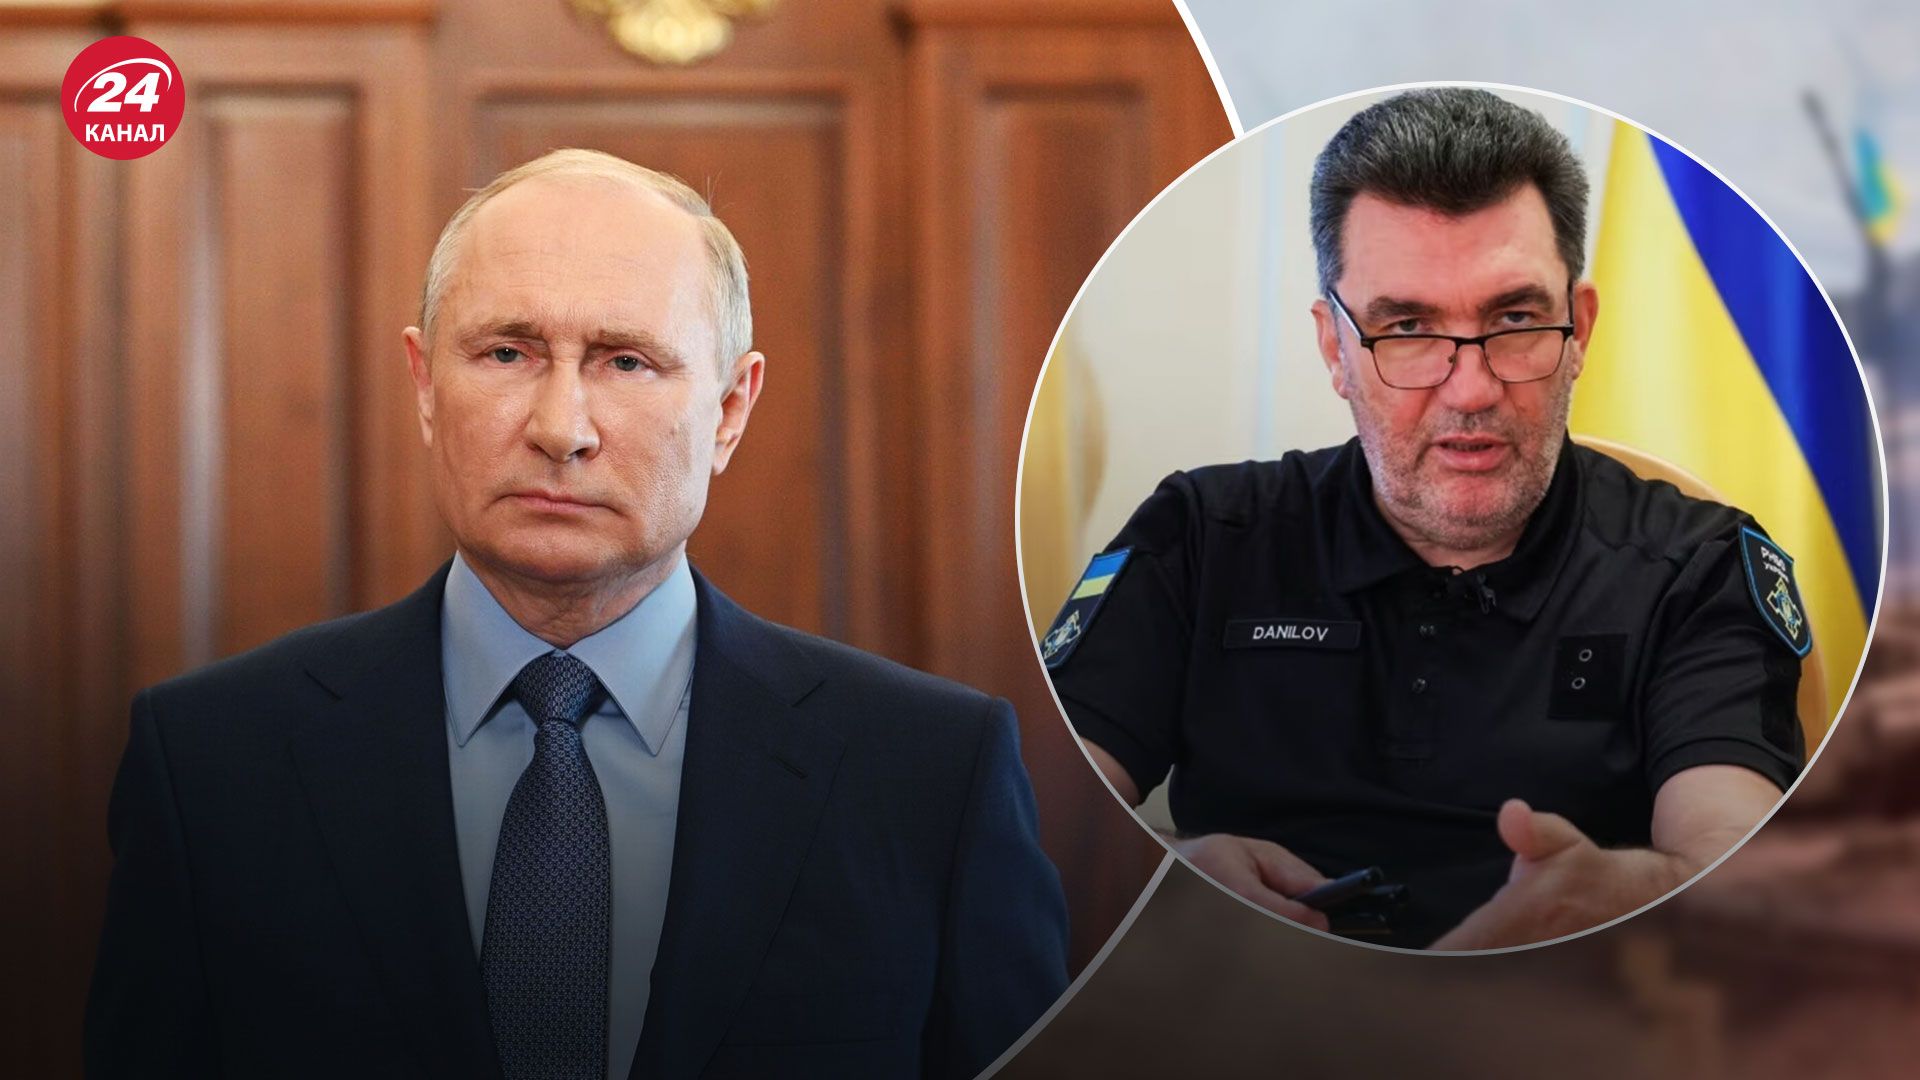 Коли треба було арештувати Путіна – Данілов прокоментував ордер від МКС - 24 Канал